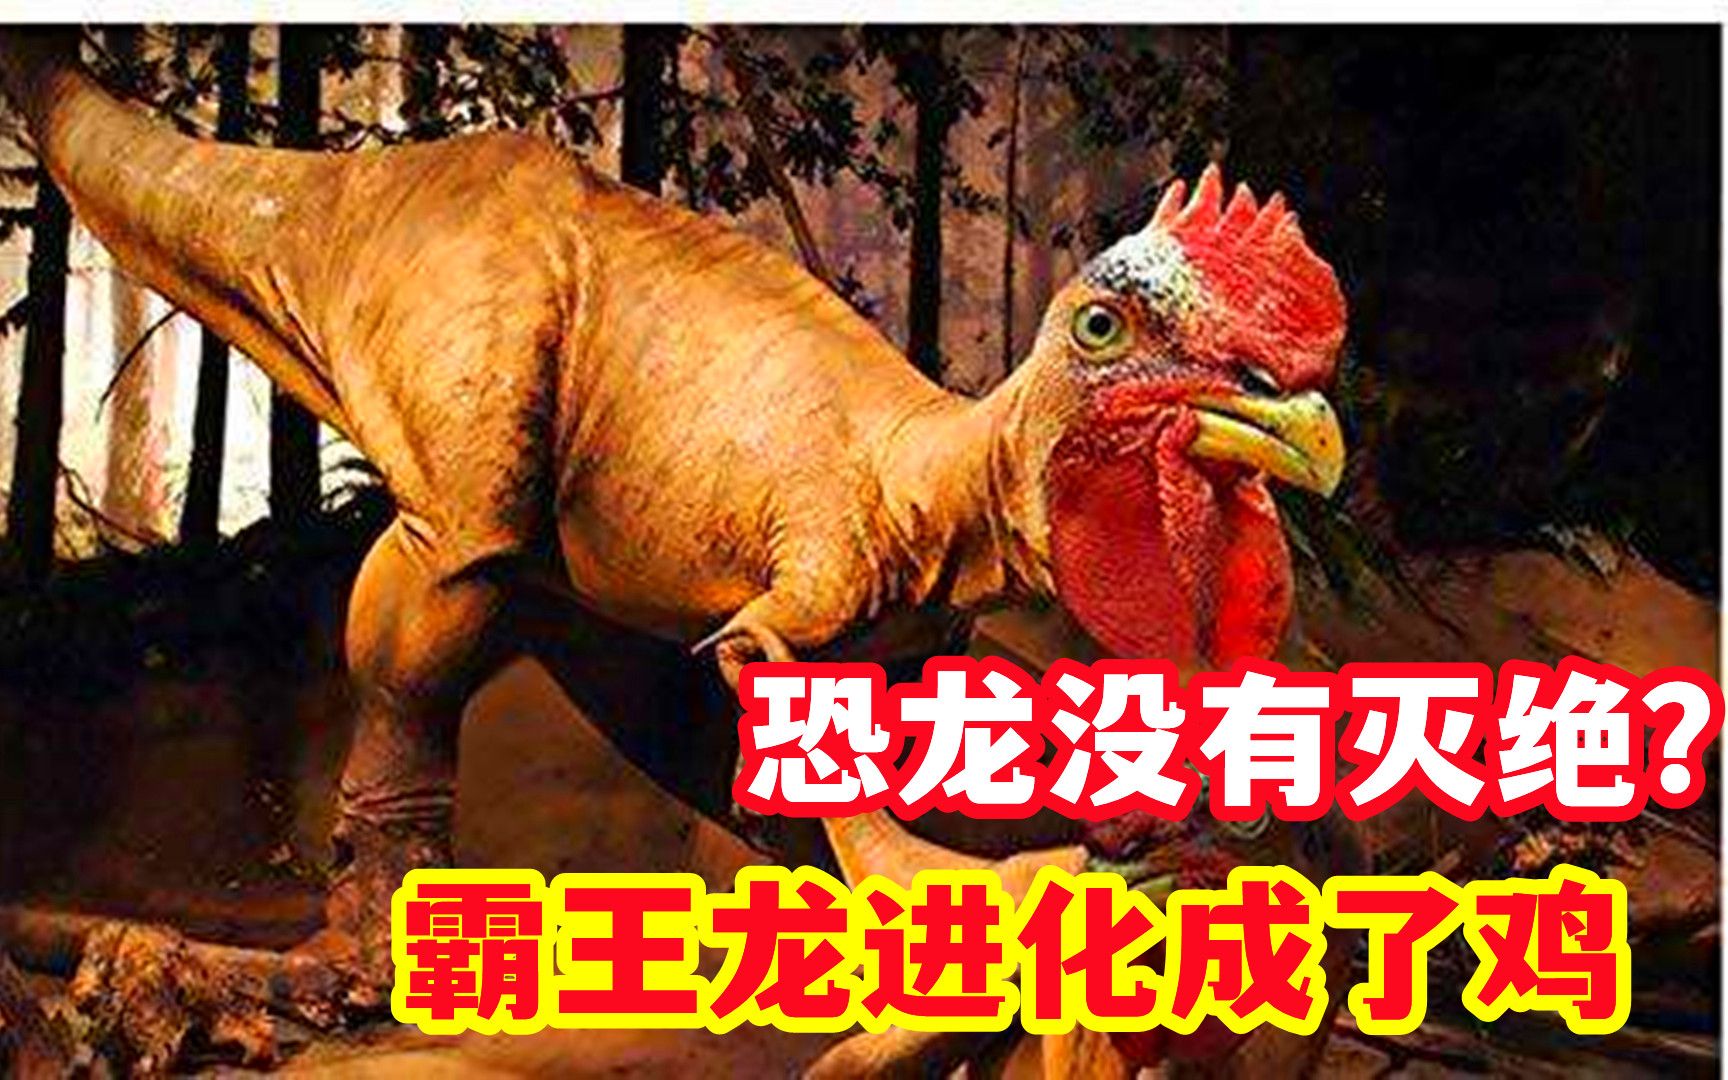 恐龙进化成鸡图片